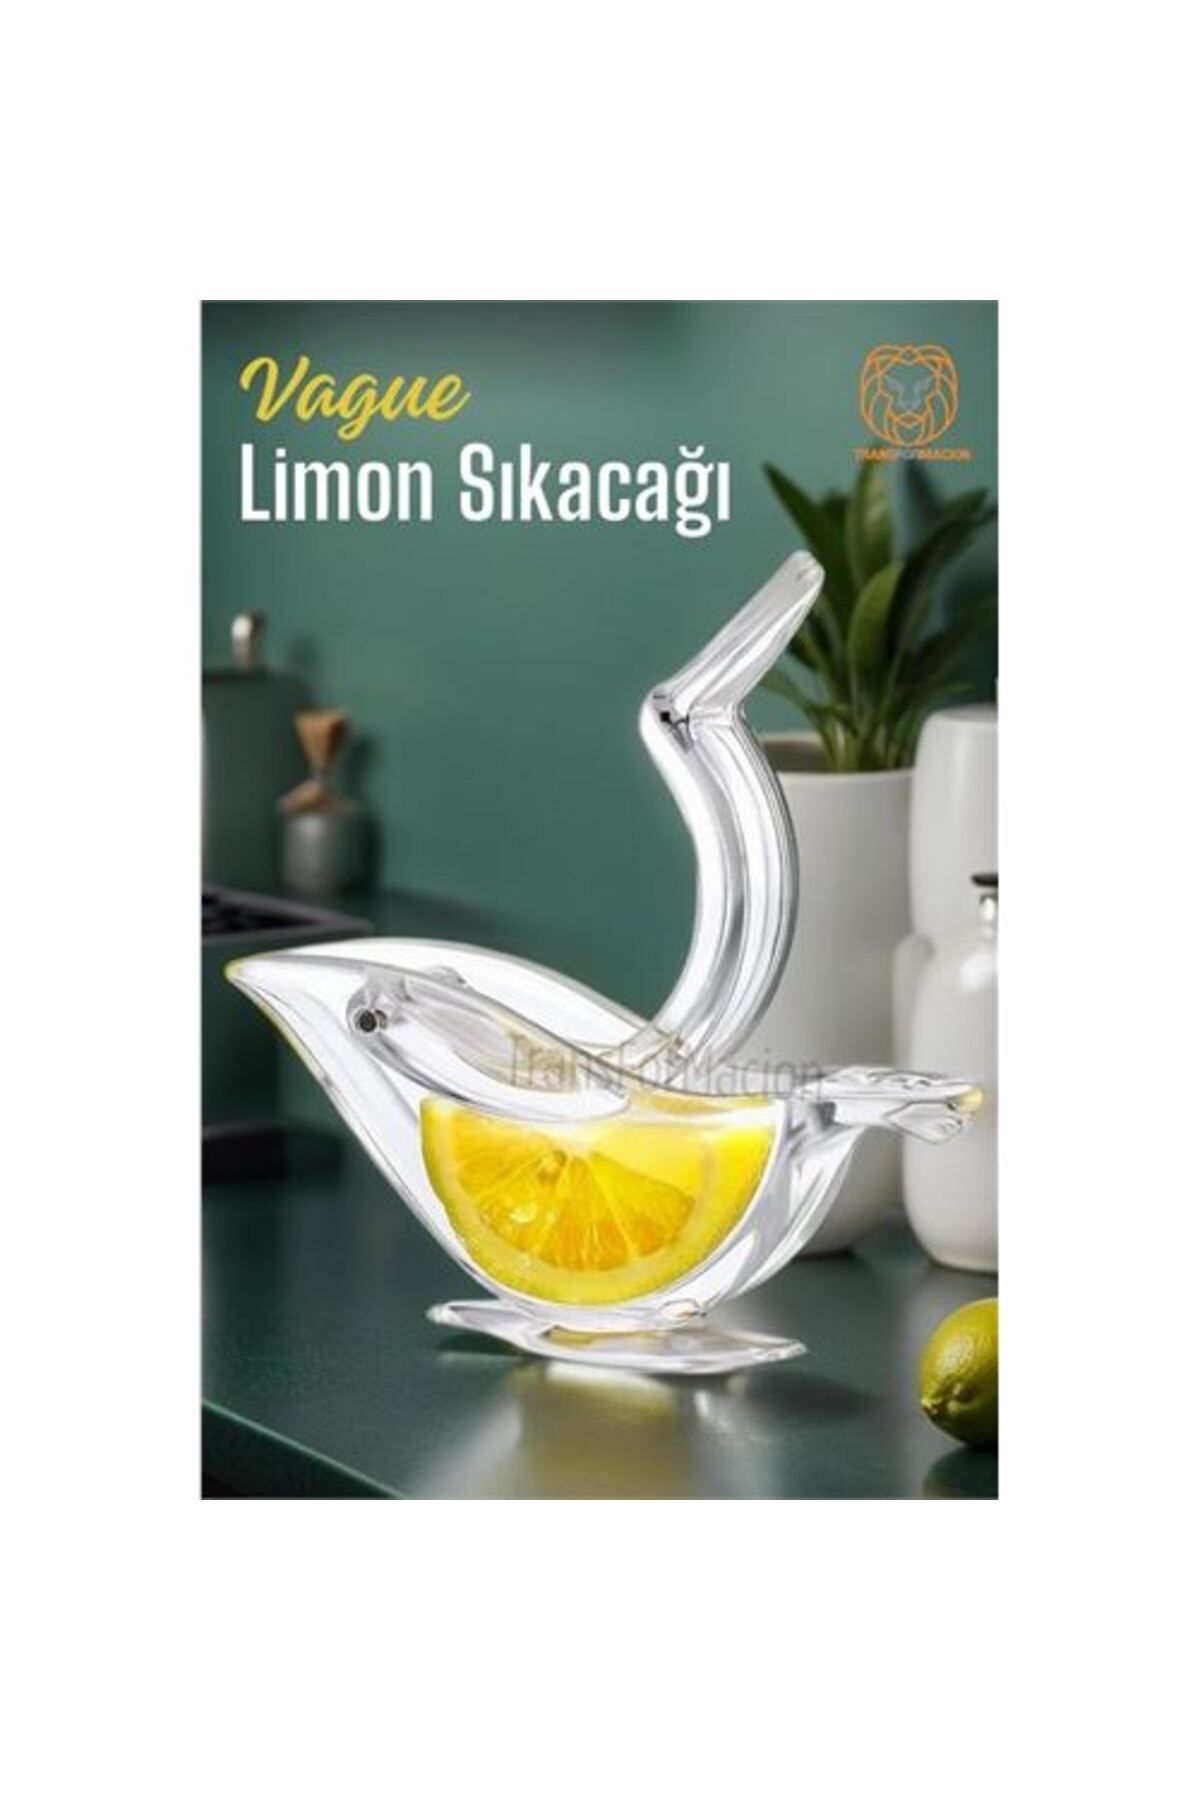 Soydoğan Taze Limon Sıkacağı Vague Design 720329